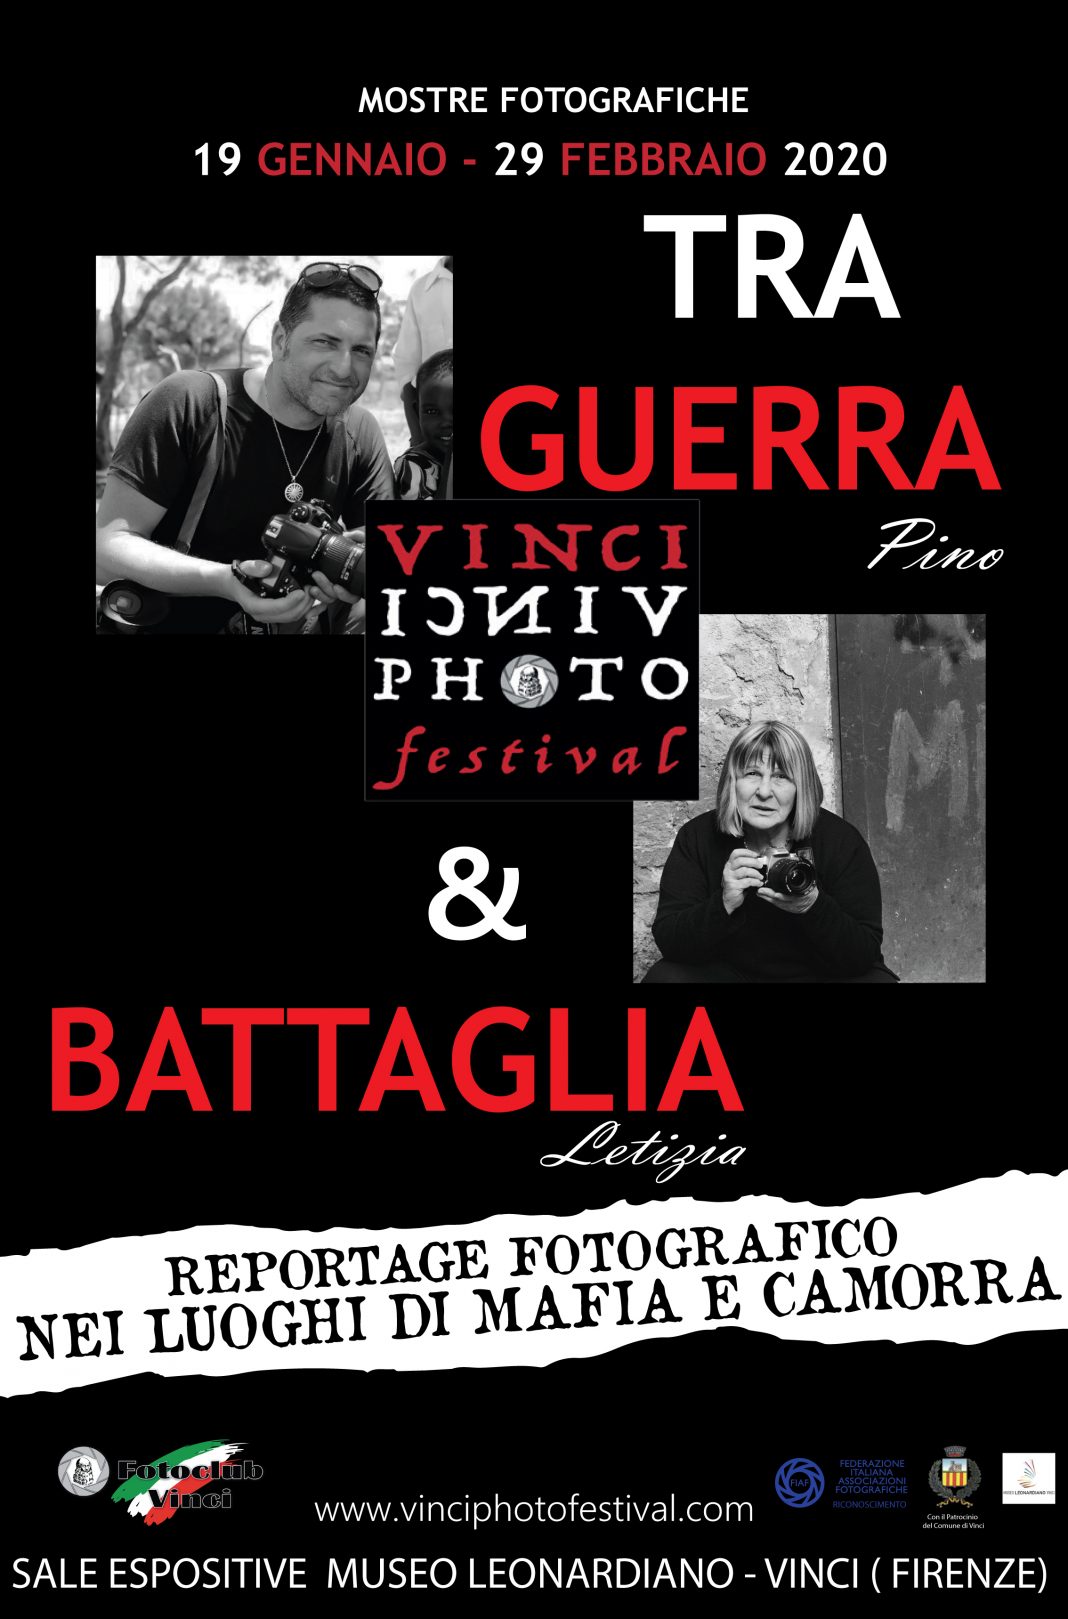 Tra Guerra e Battaglia. Reportage fotografico nei luoghi di Mafia e Camorrahttps://www.exibart.com/repository/media/formidable/11/MANIFESTO-GENERALE-1068x1619.jpg